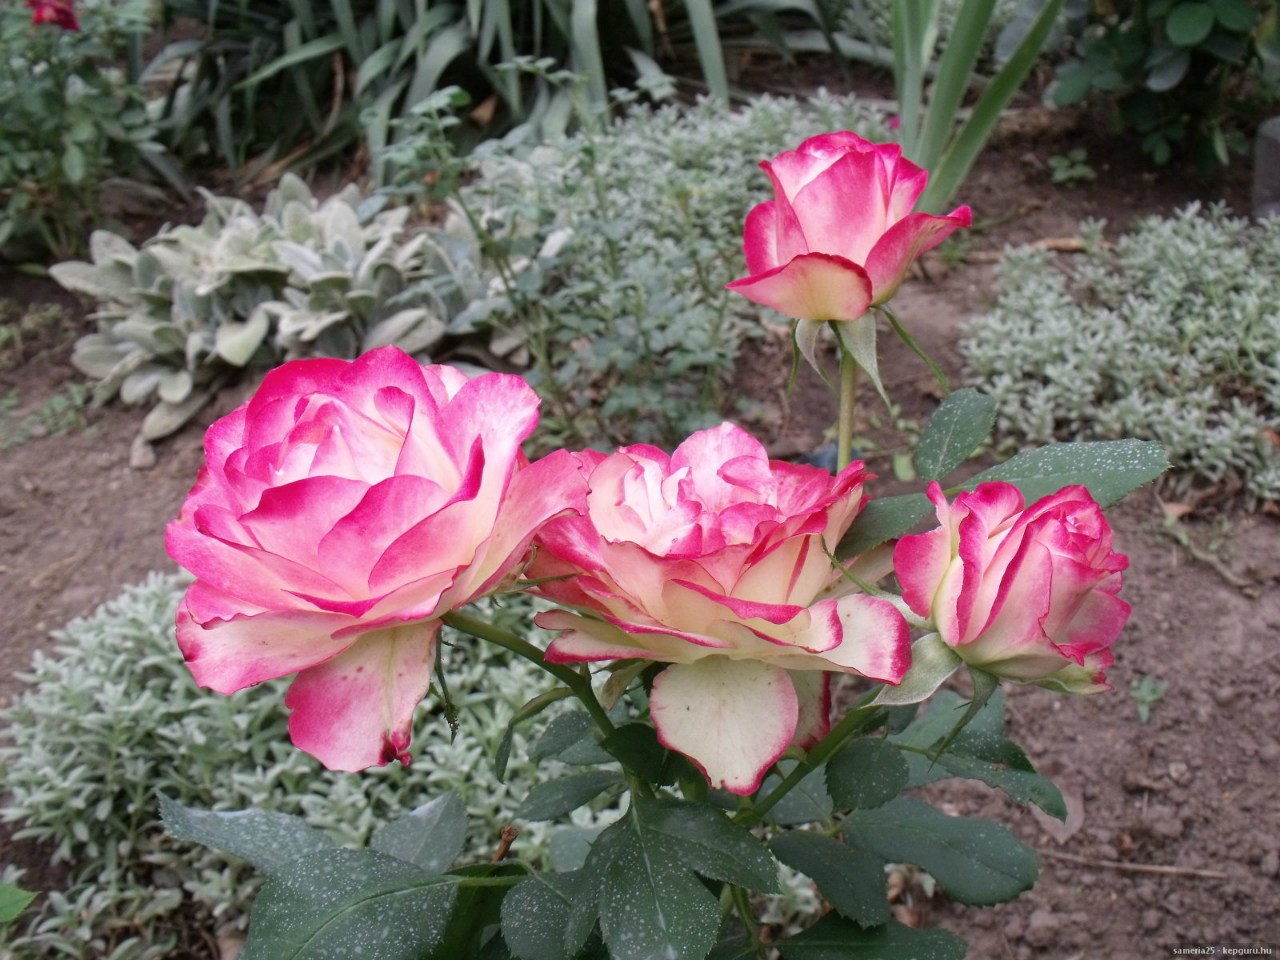 фото розы юбилей санкт петербурга